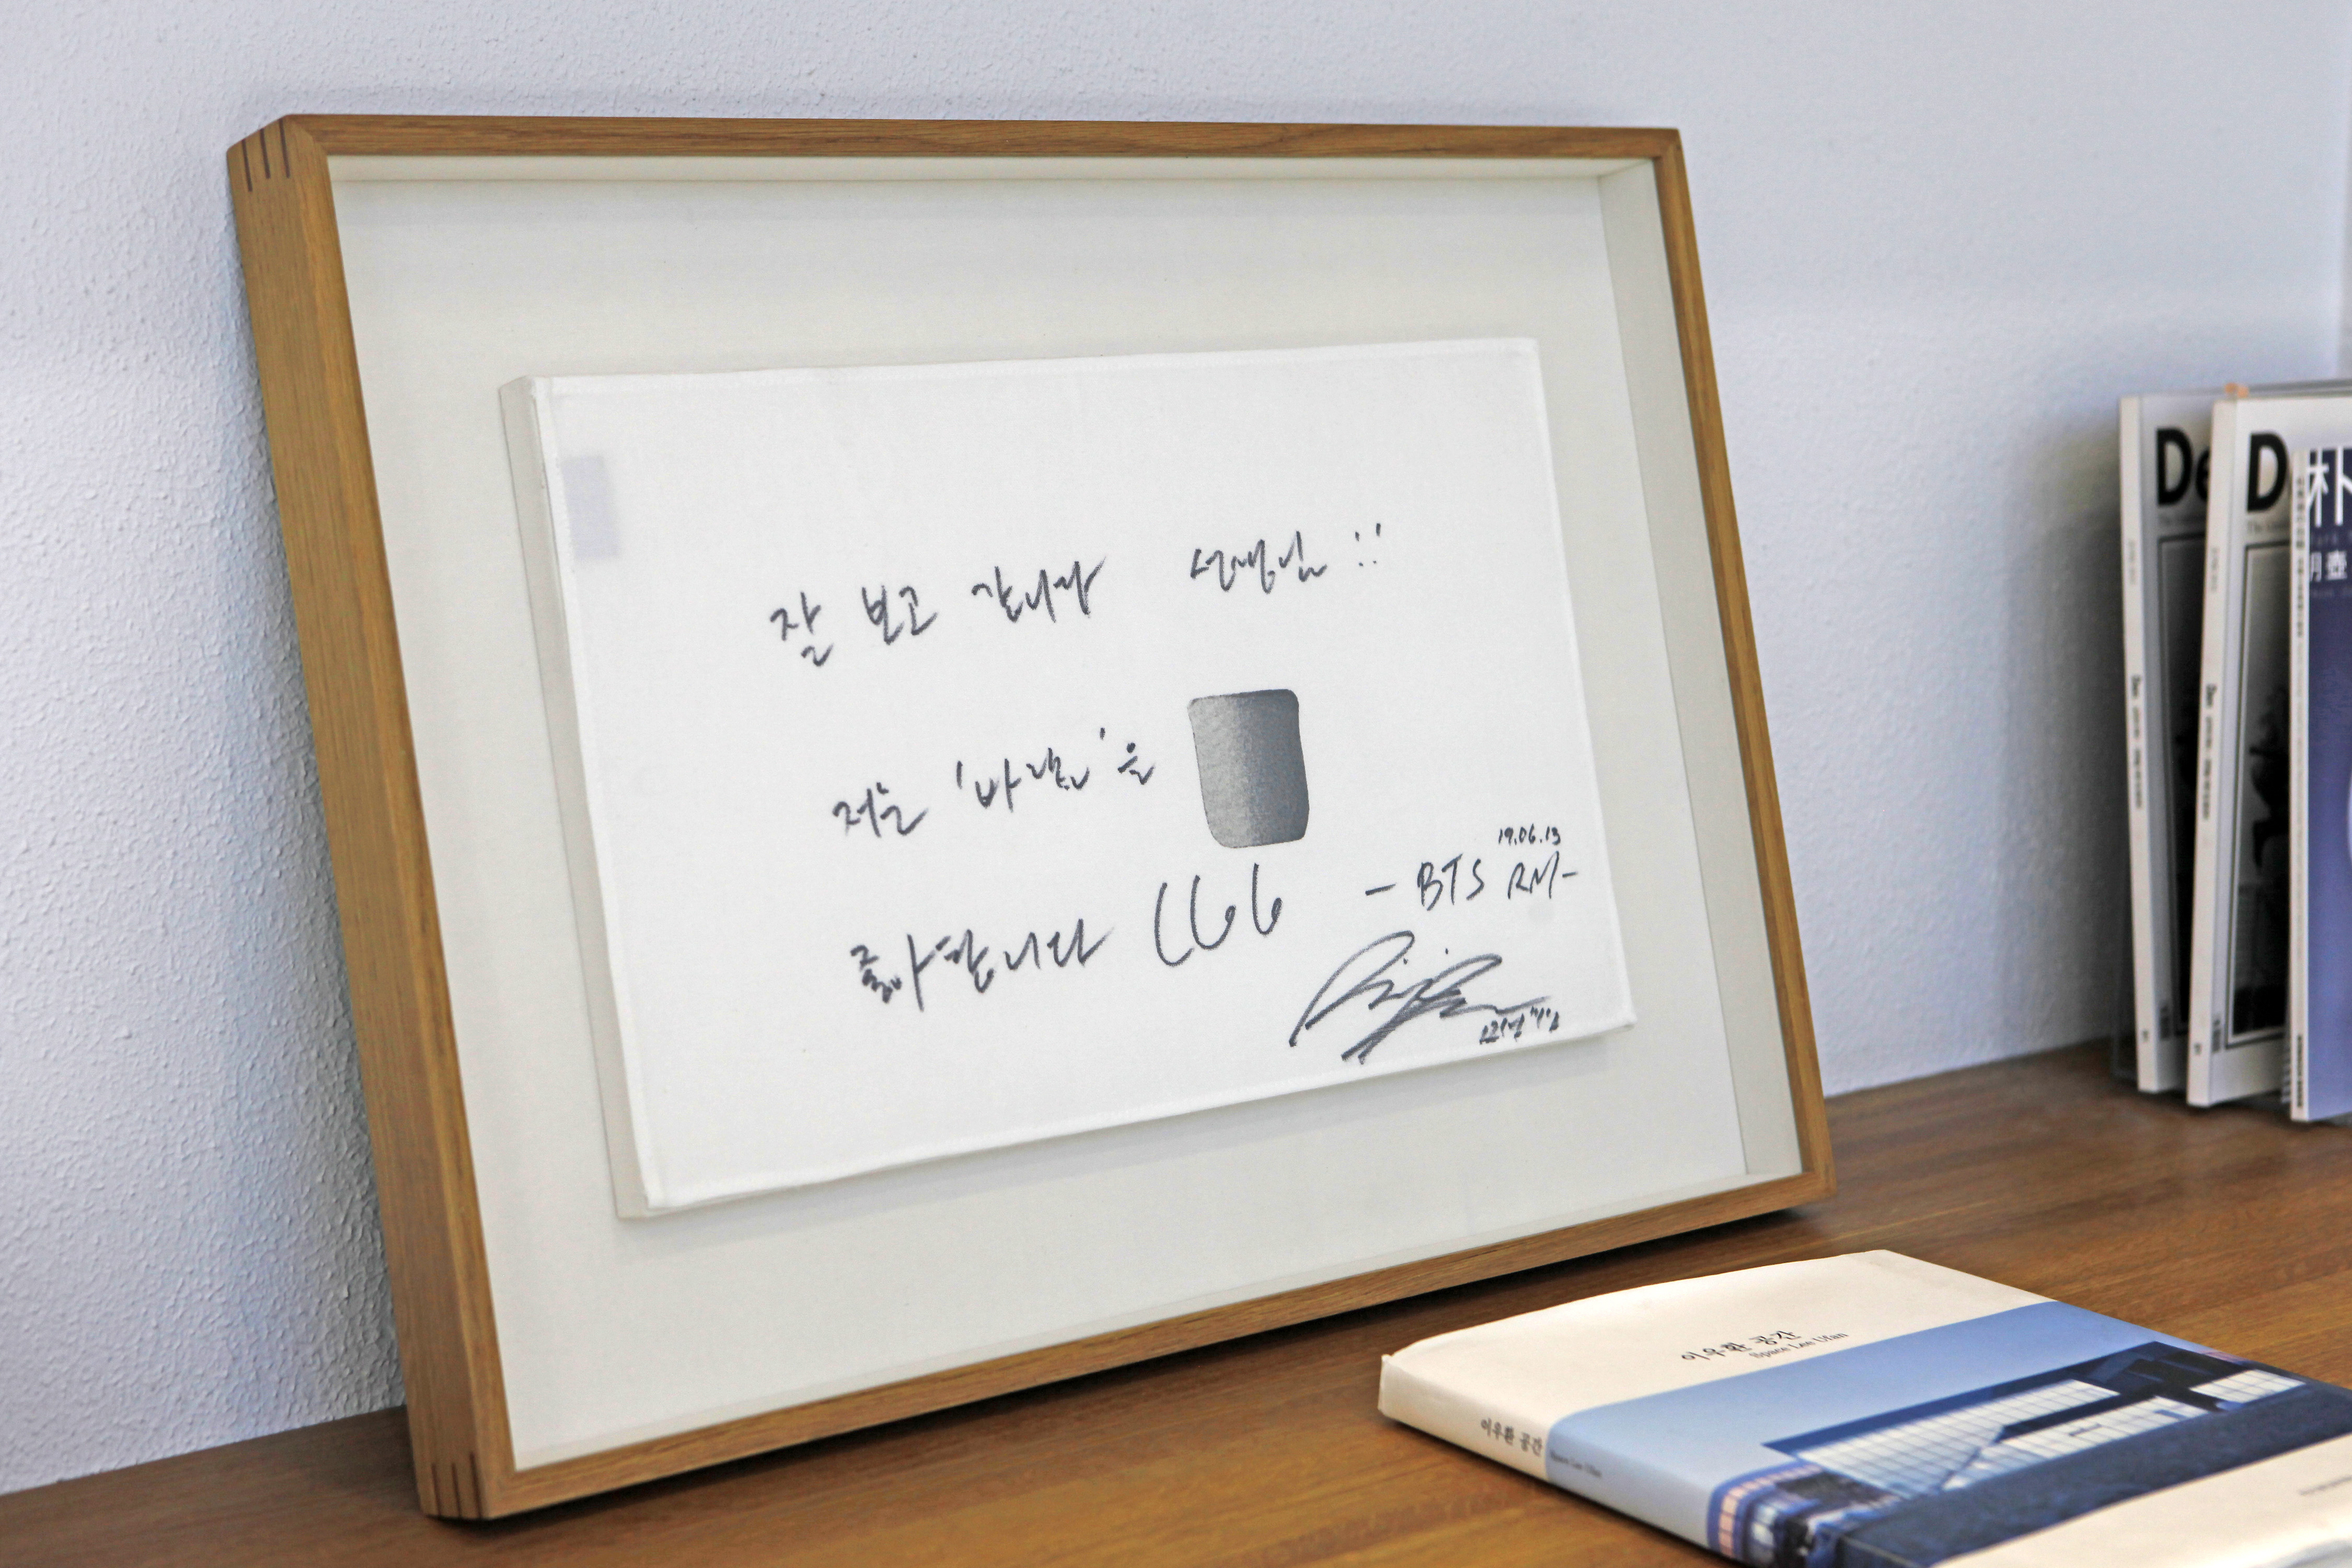 이우환 공간에 남긴 방탄소년단(BTS) RM의 사인. 그는 이우환의 작품 ‘바람’ 시리즈의 팬으로 잘 알려져 있다.